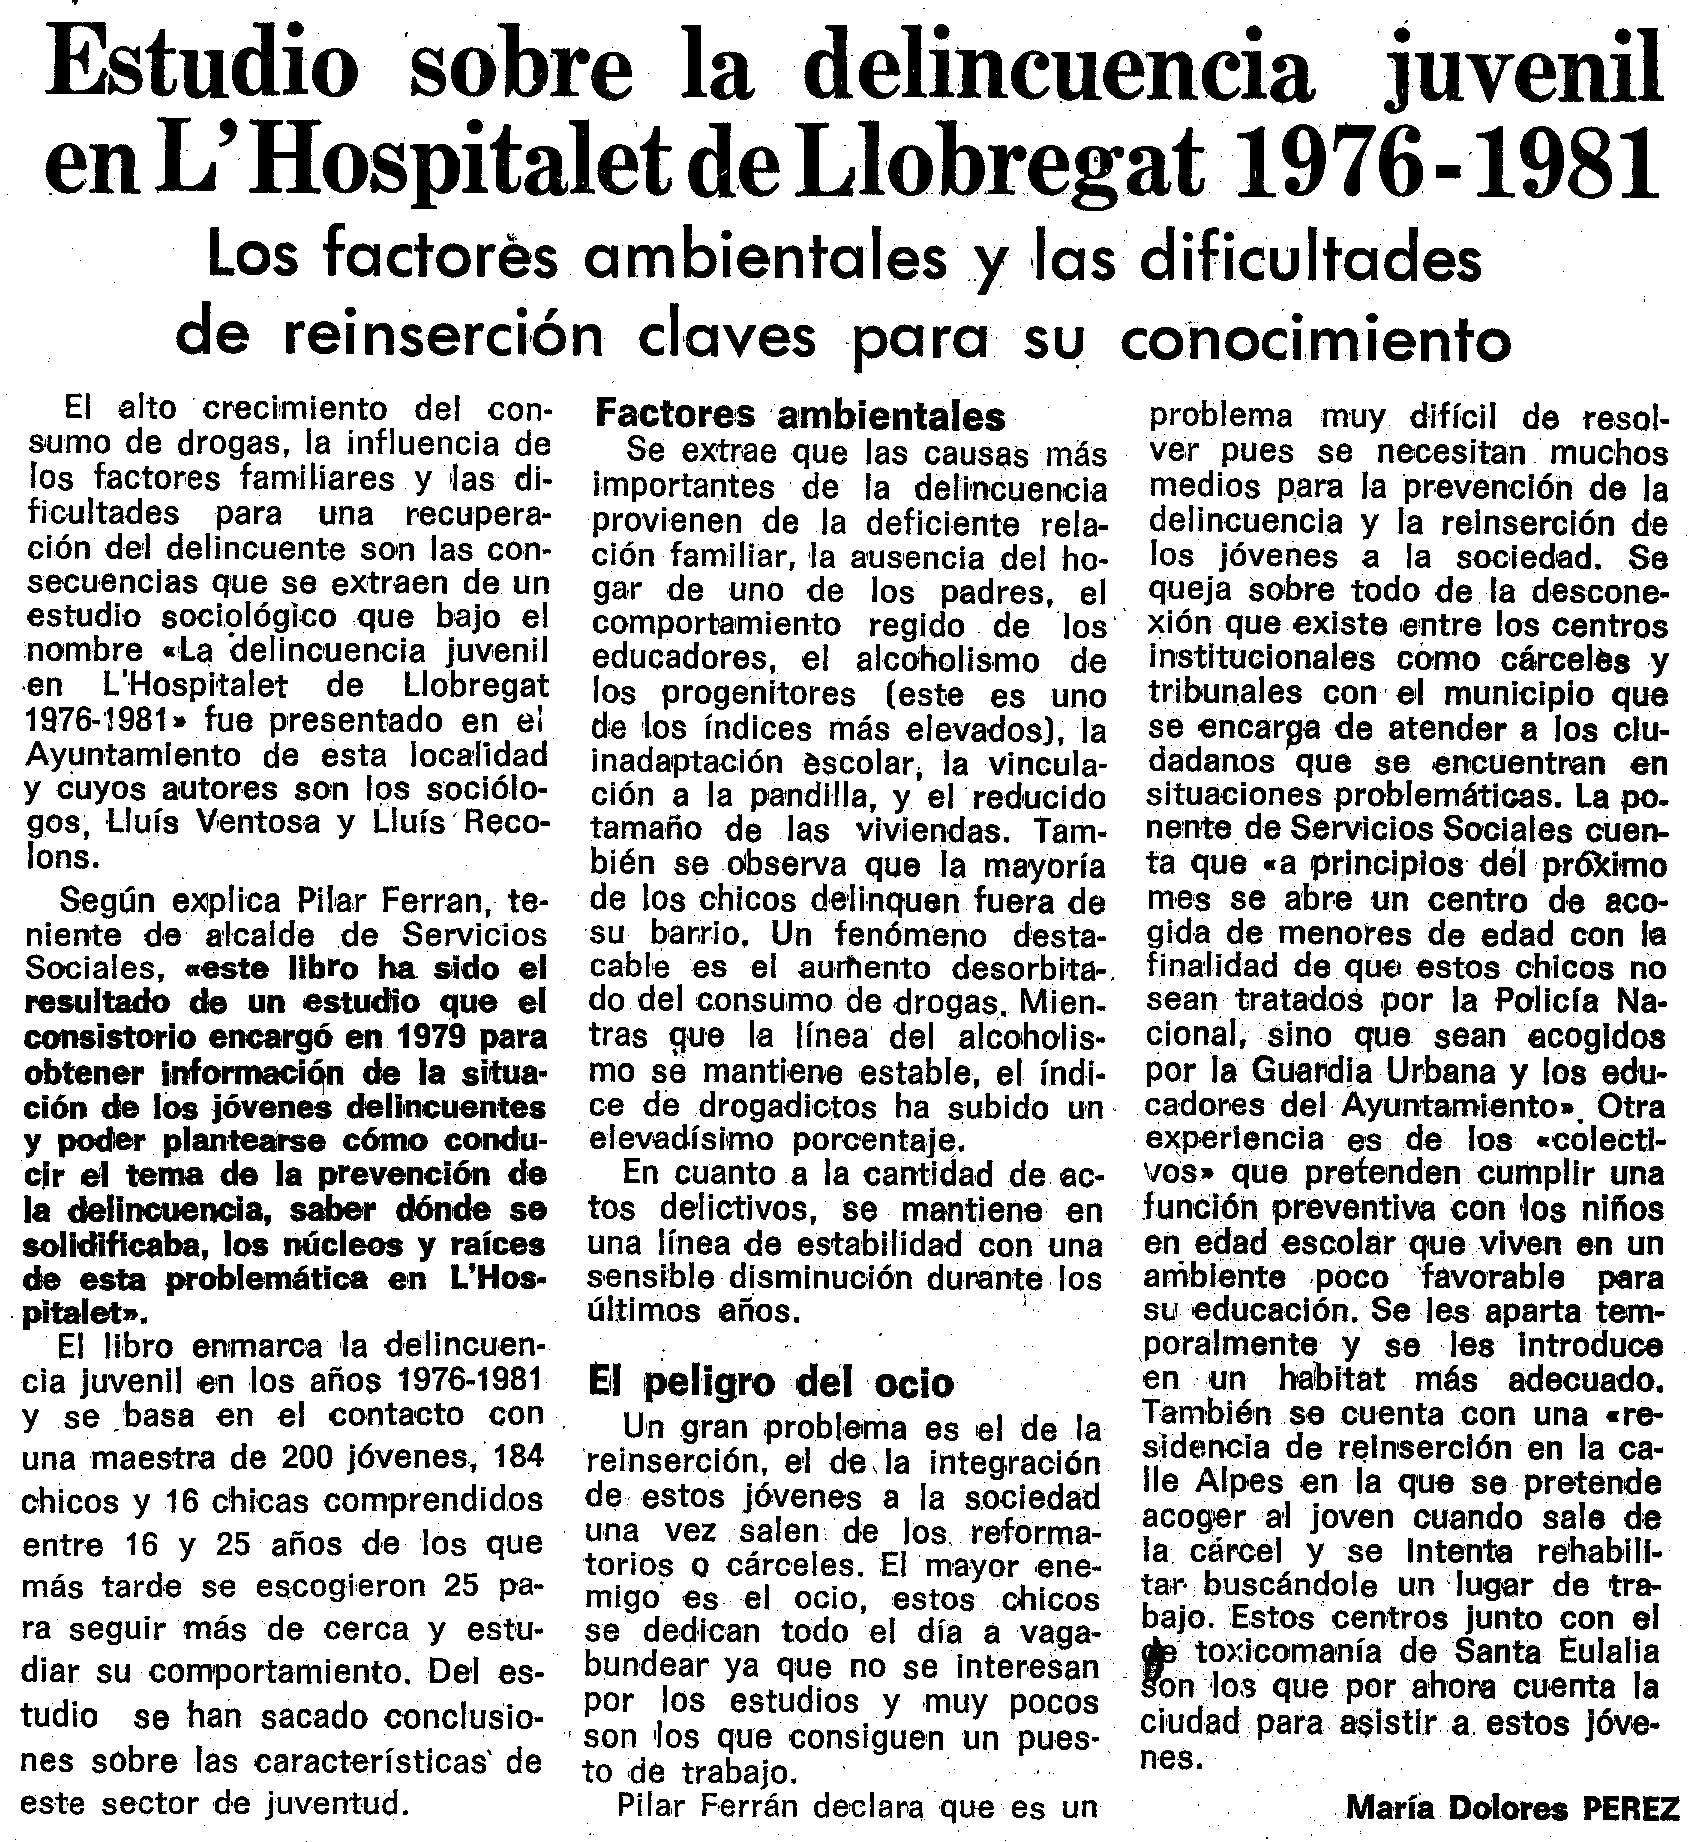 Artículo publicado en La Vanguardia el 19 de noviembre de 1982.